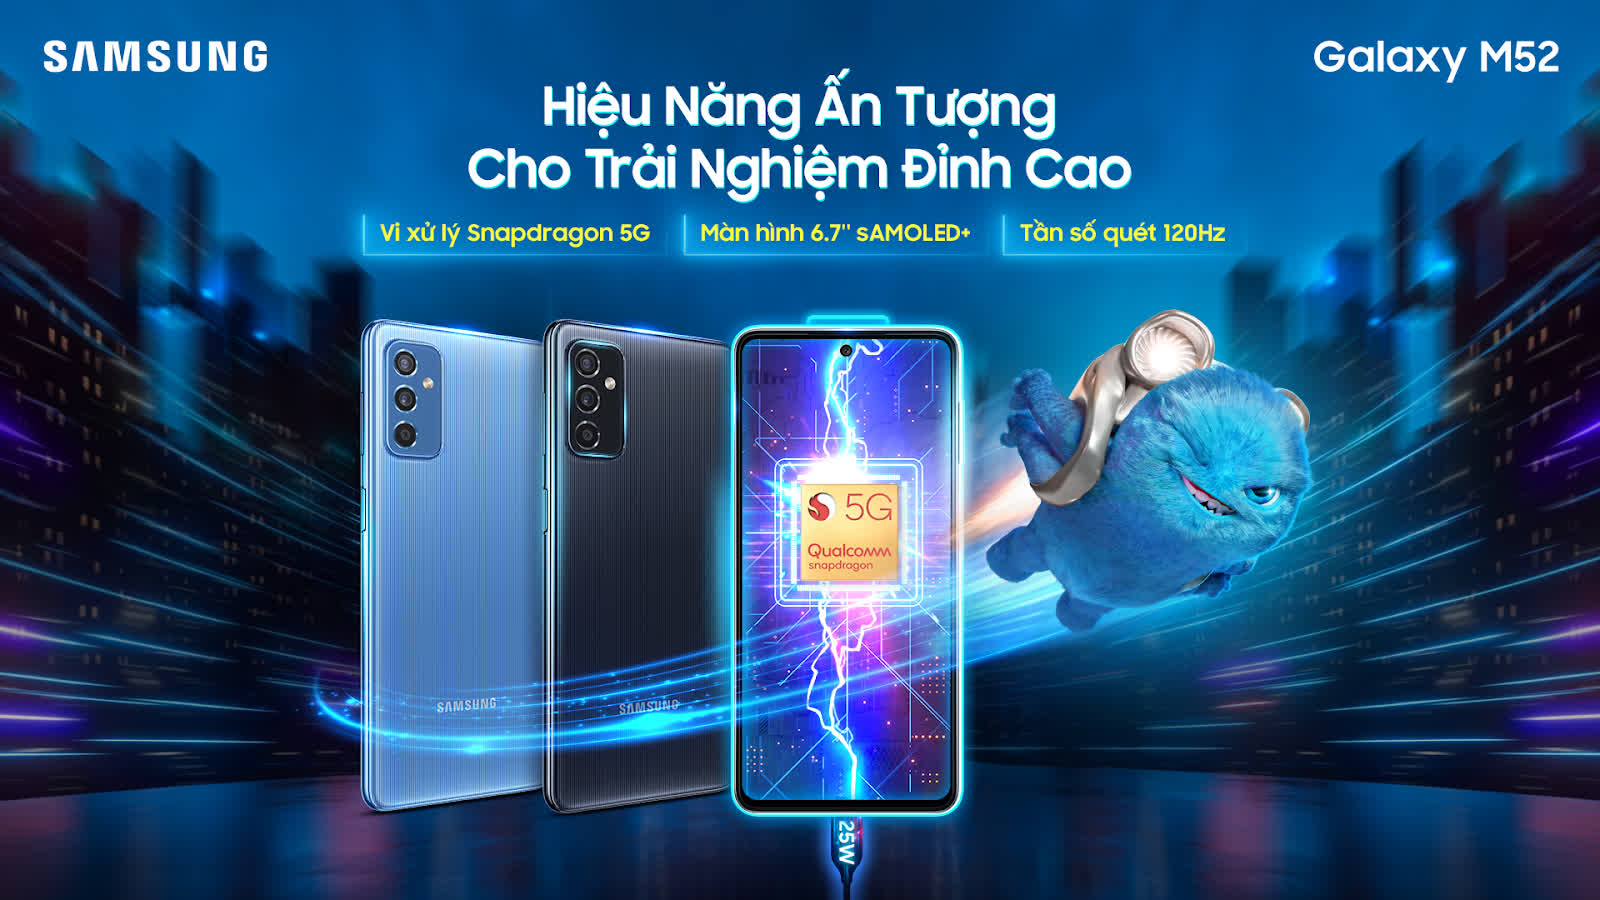 Samsung Galaxy M52 5G ra mắt: Nỗ lực làm chủ phân khúc smartphone 5G tại Việt Nam - Ảnh 4.